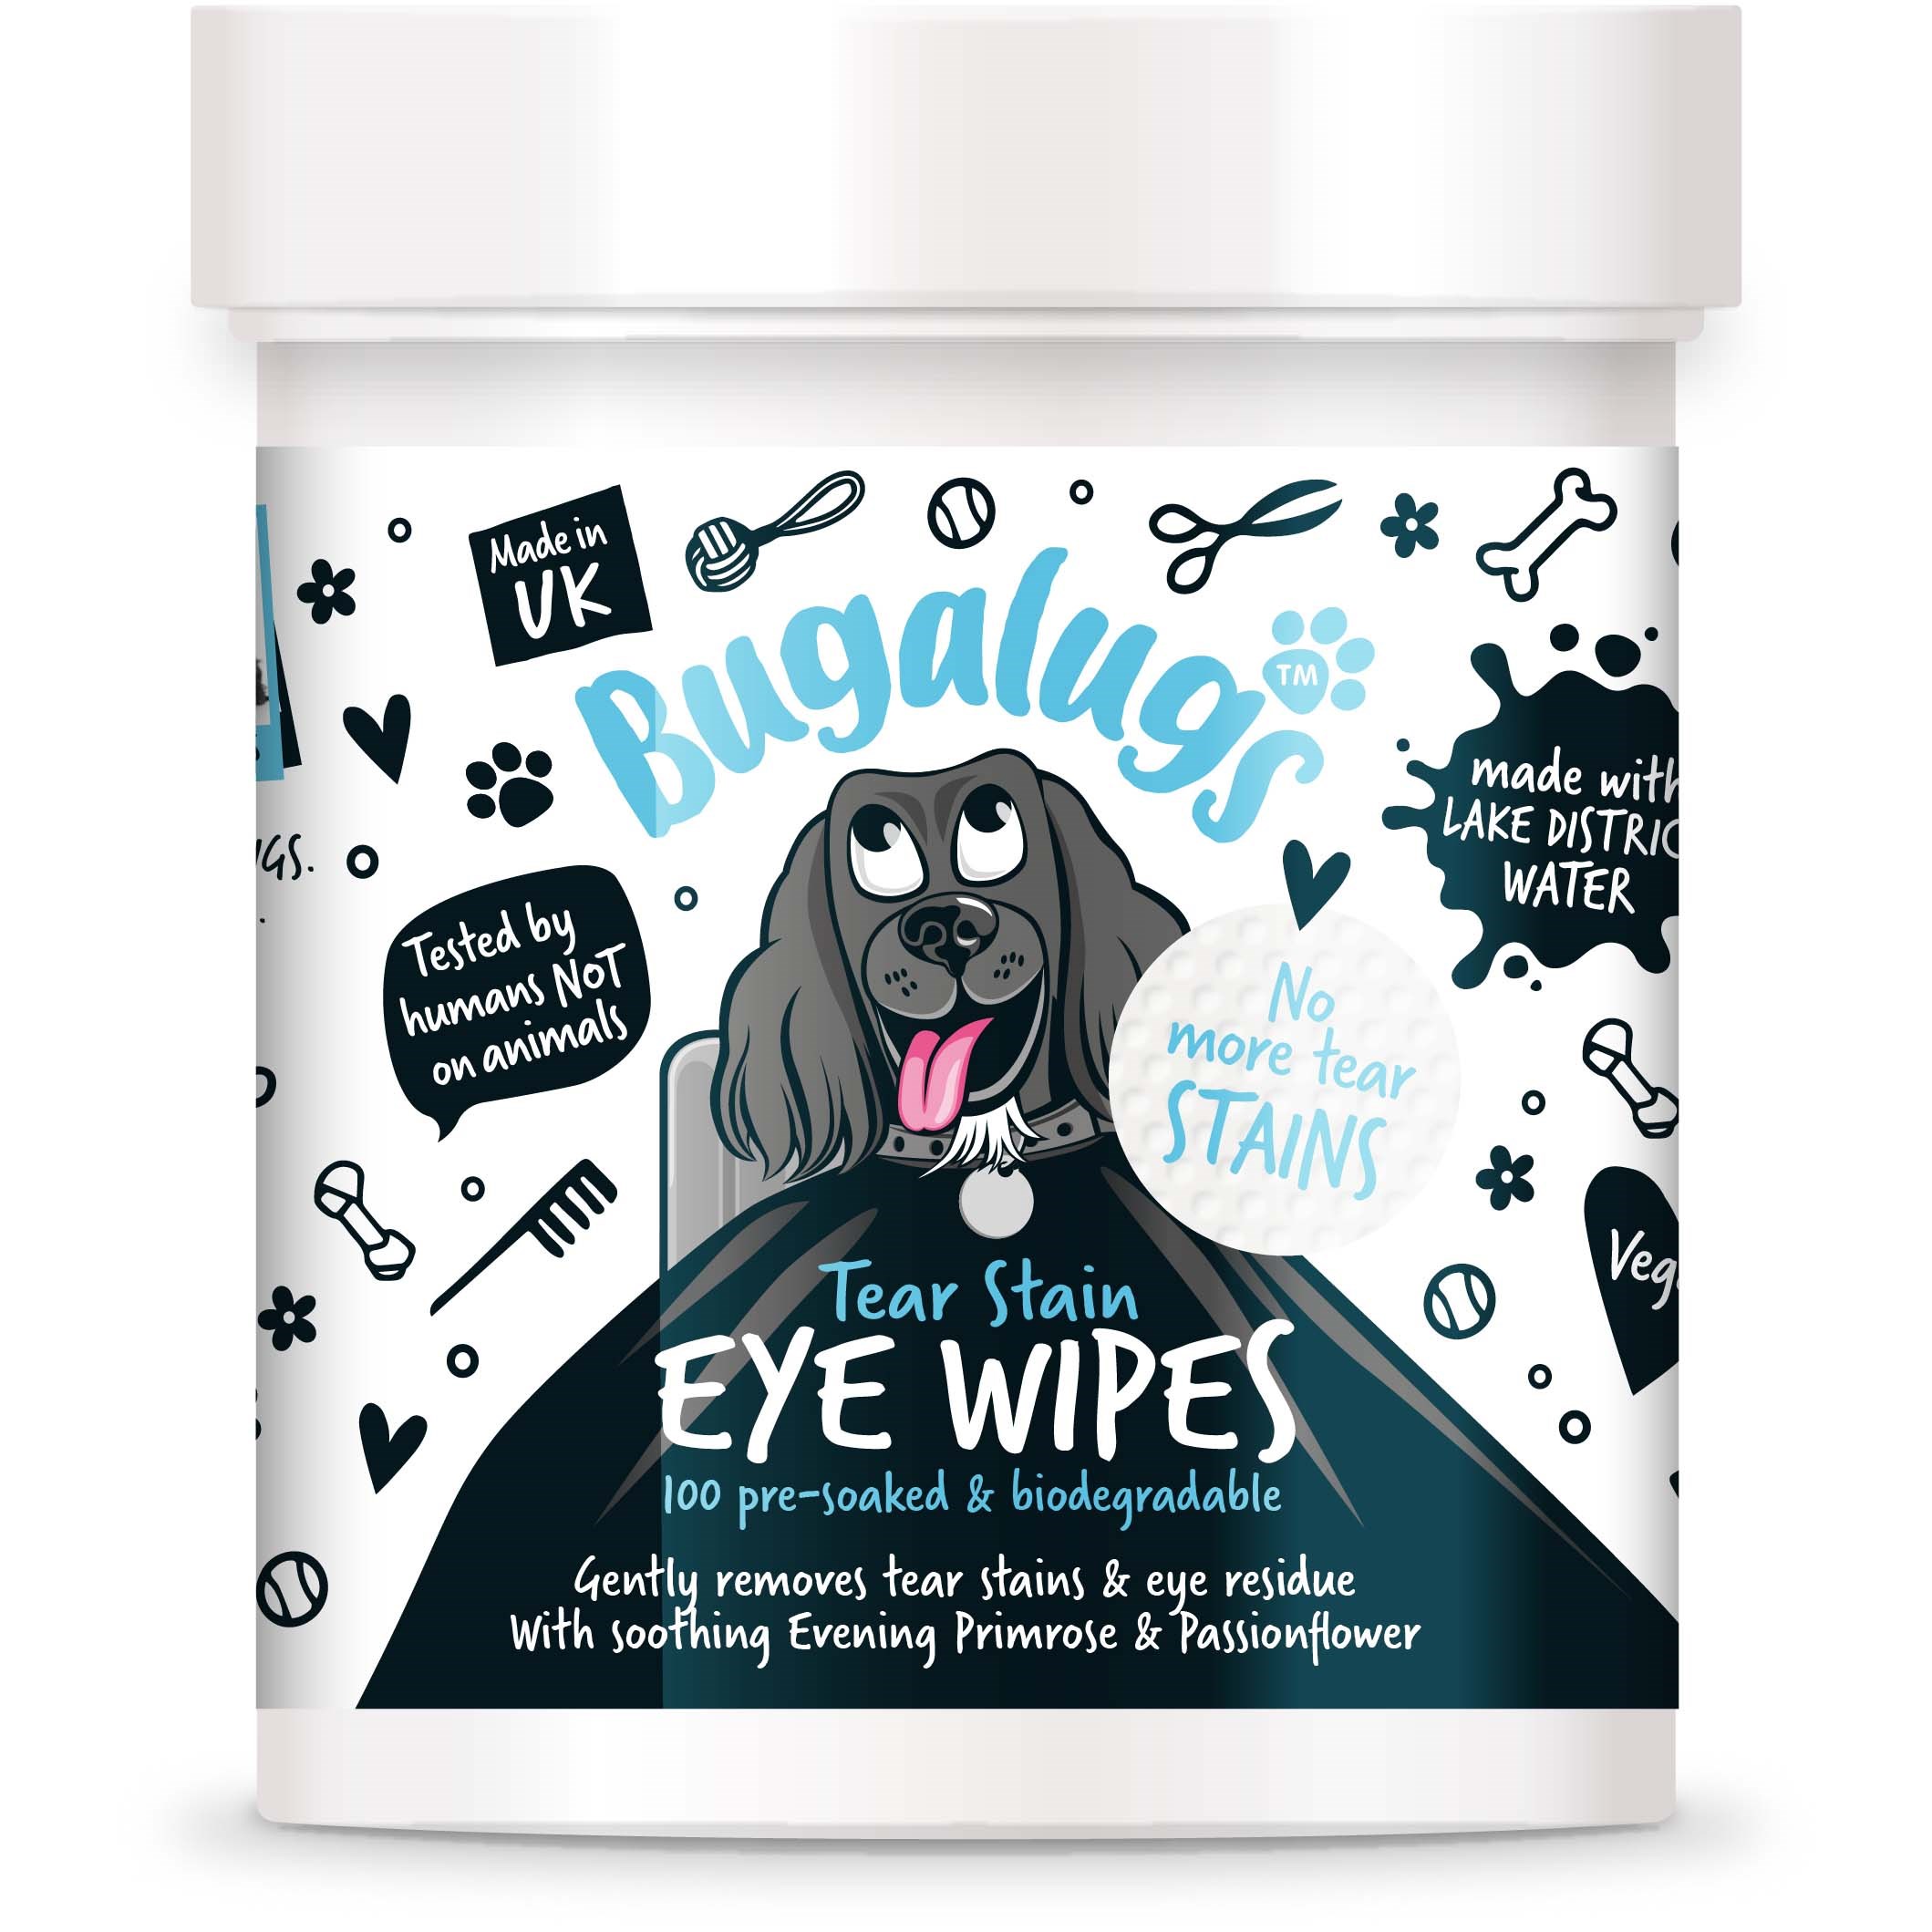 Bugalugs Tear Stain Eye Wipes